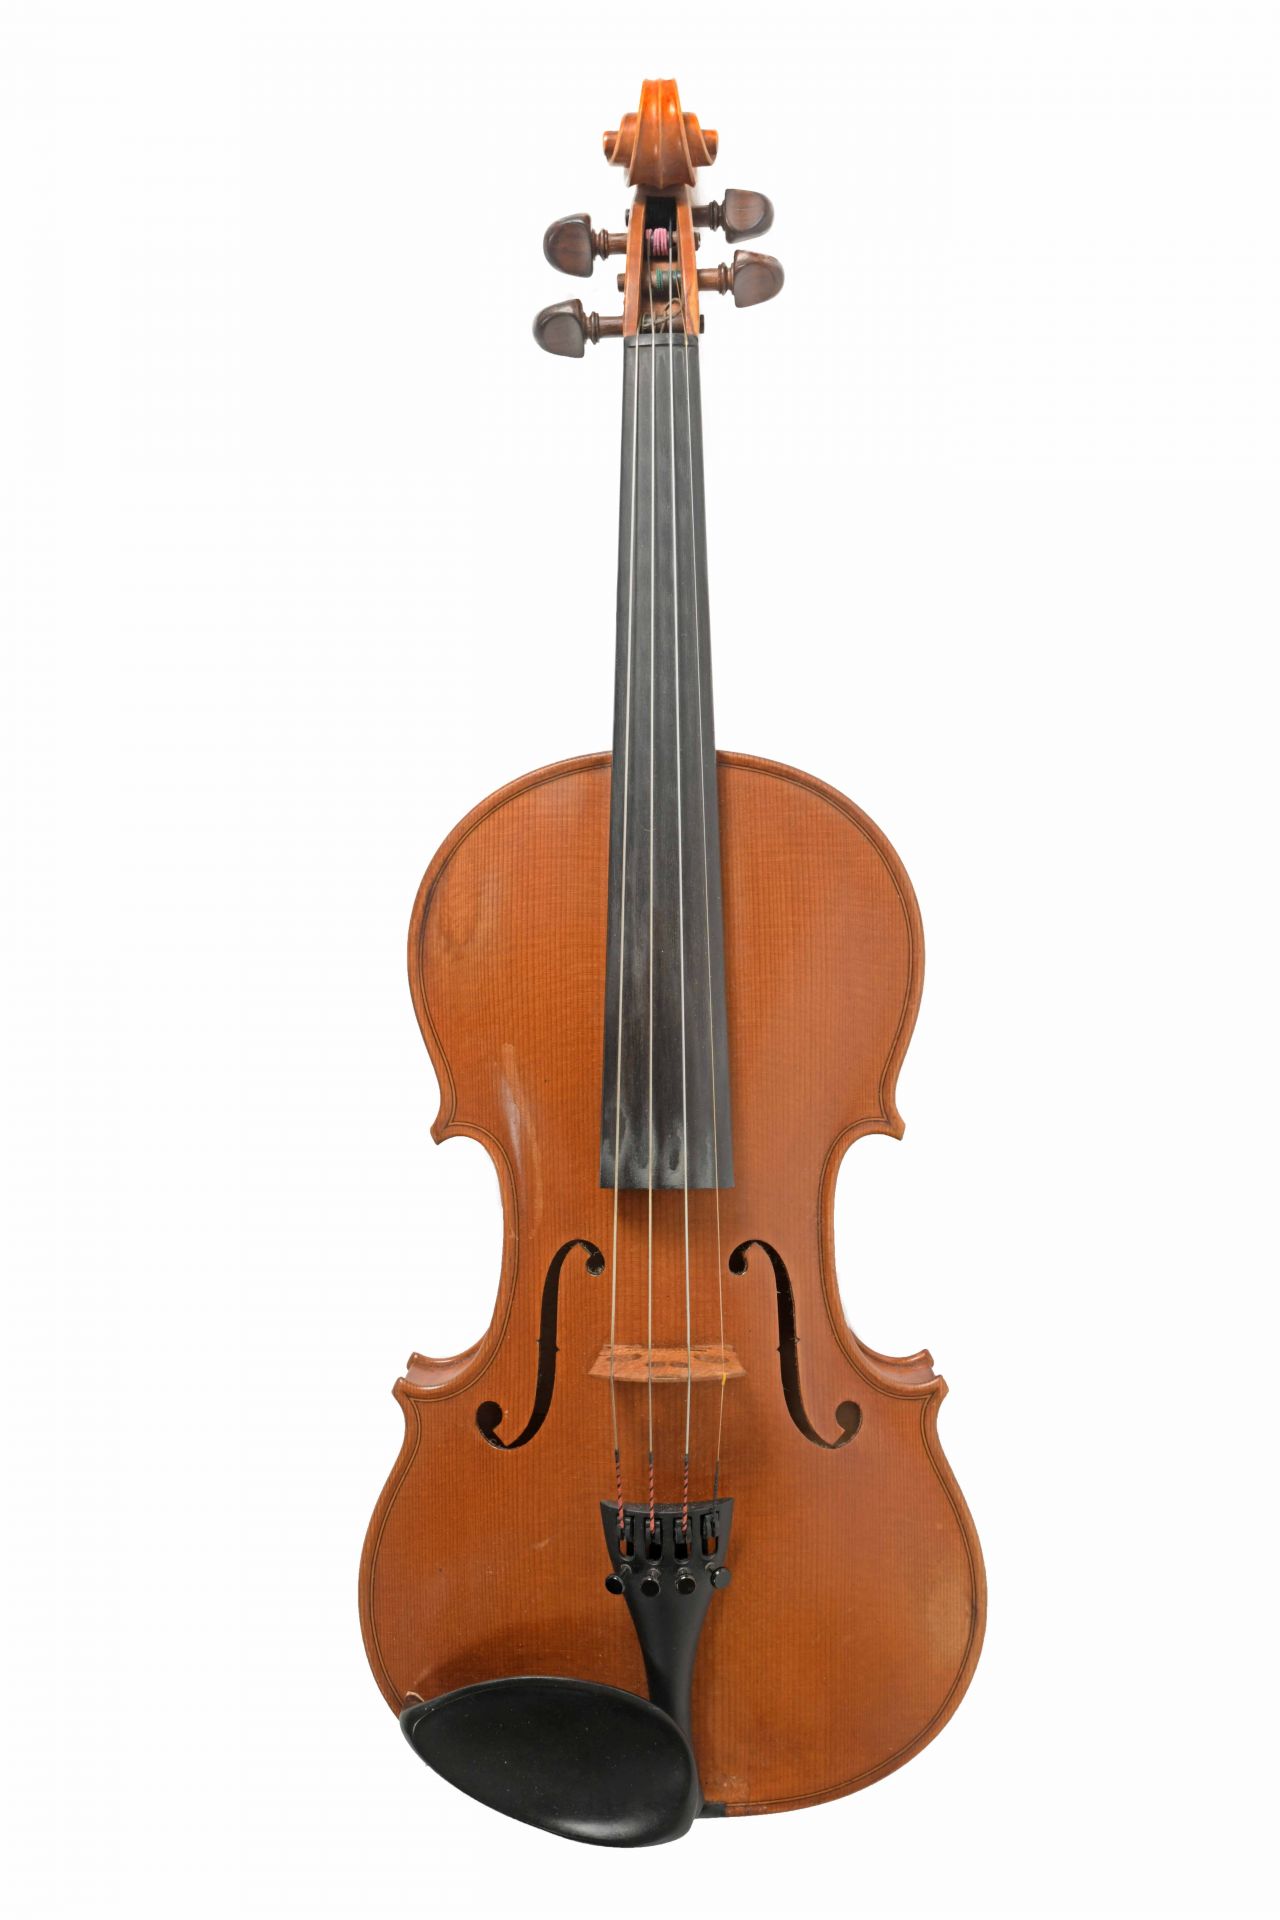 Rowan Armour-Brown violin